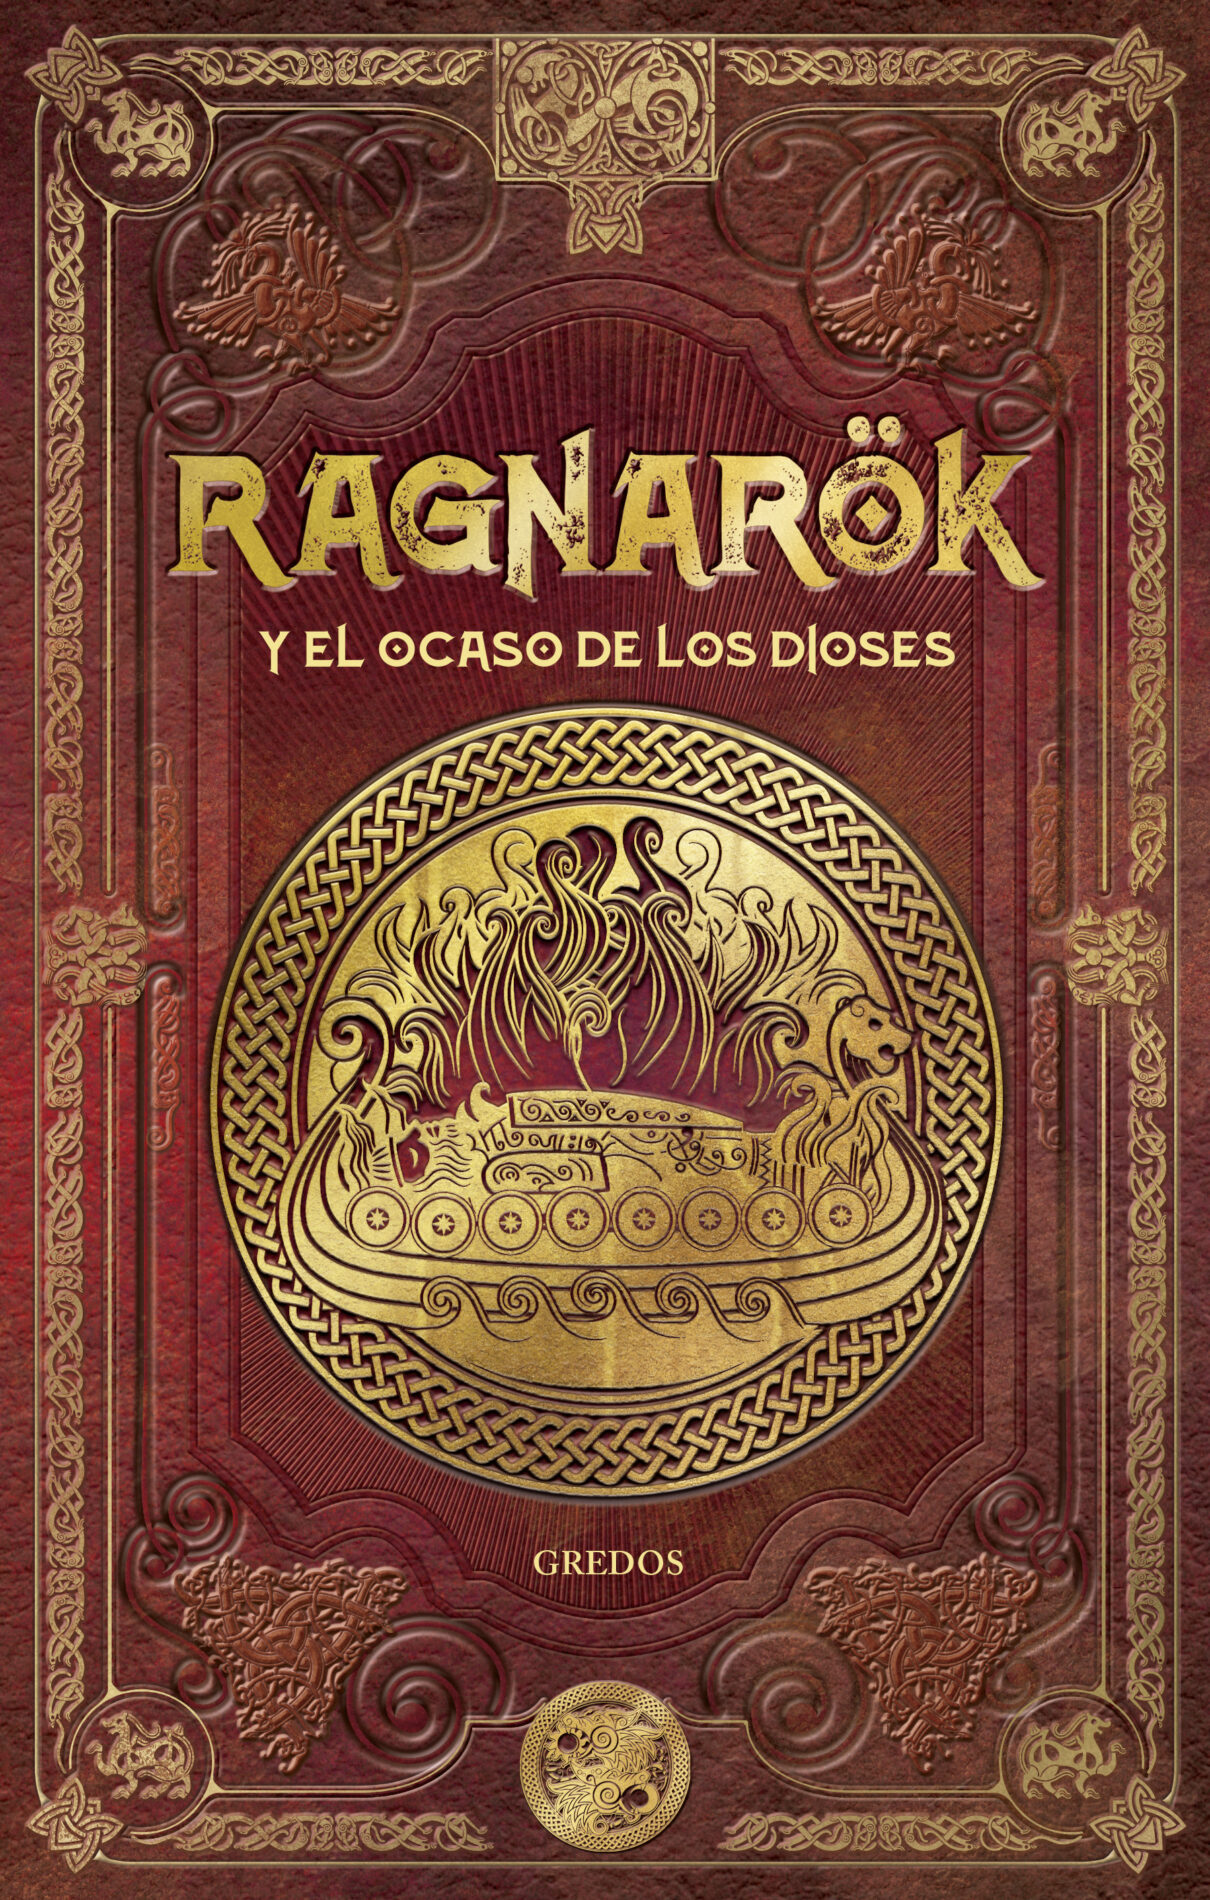 Permanecer pacífico me quejo Nuevo libro de Mitos nórdicos: Ragnarok y el ocaso de los diosesNeimhaim  saga de literatura fantástica